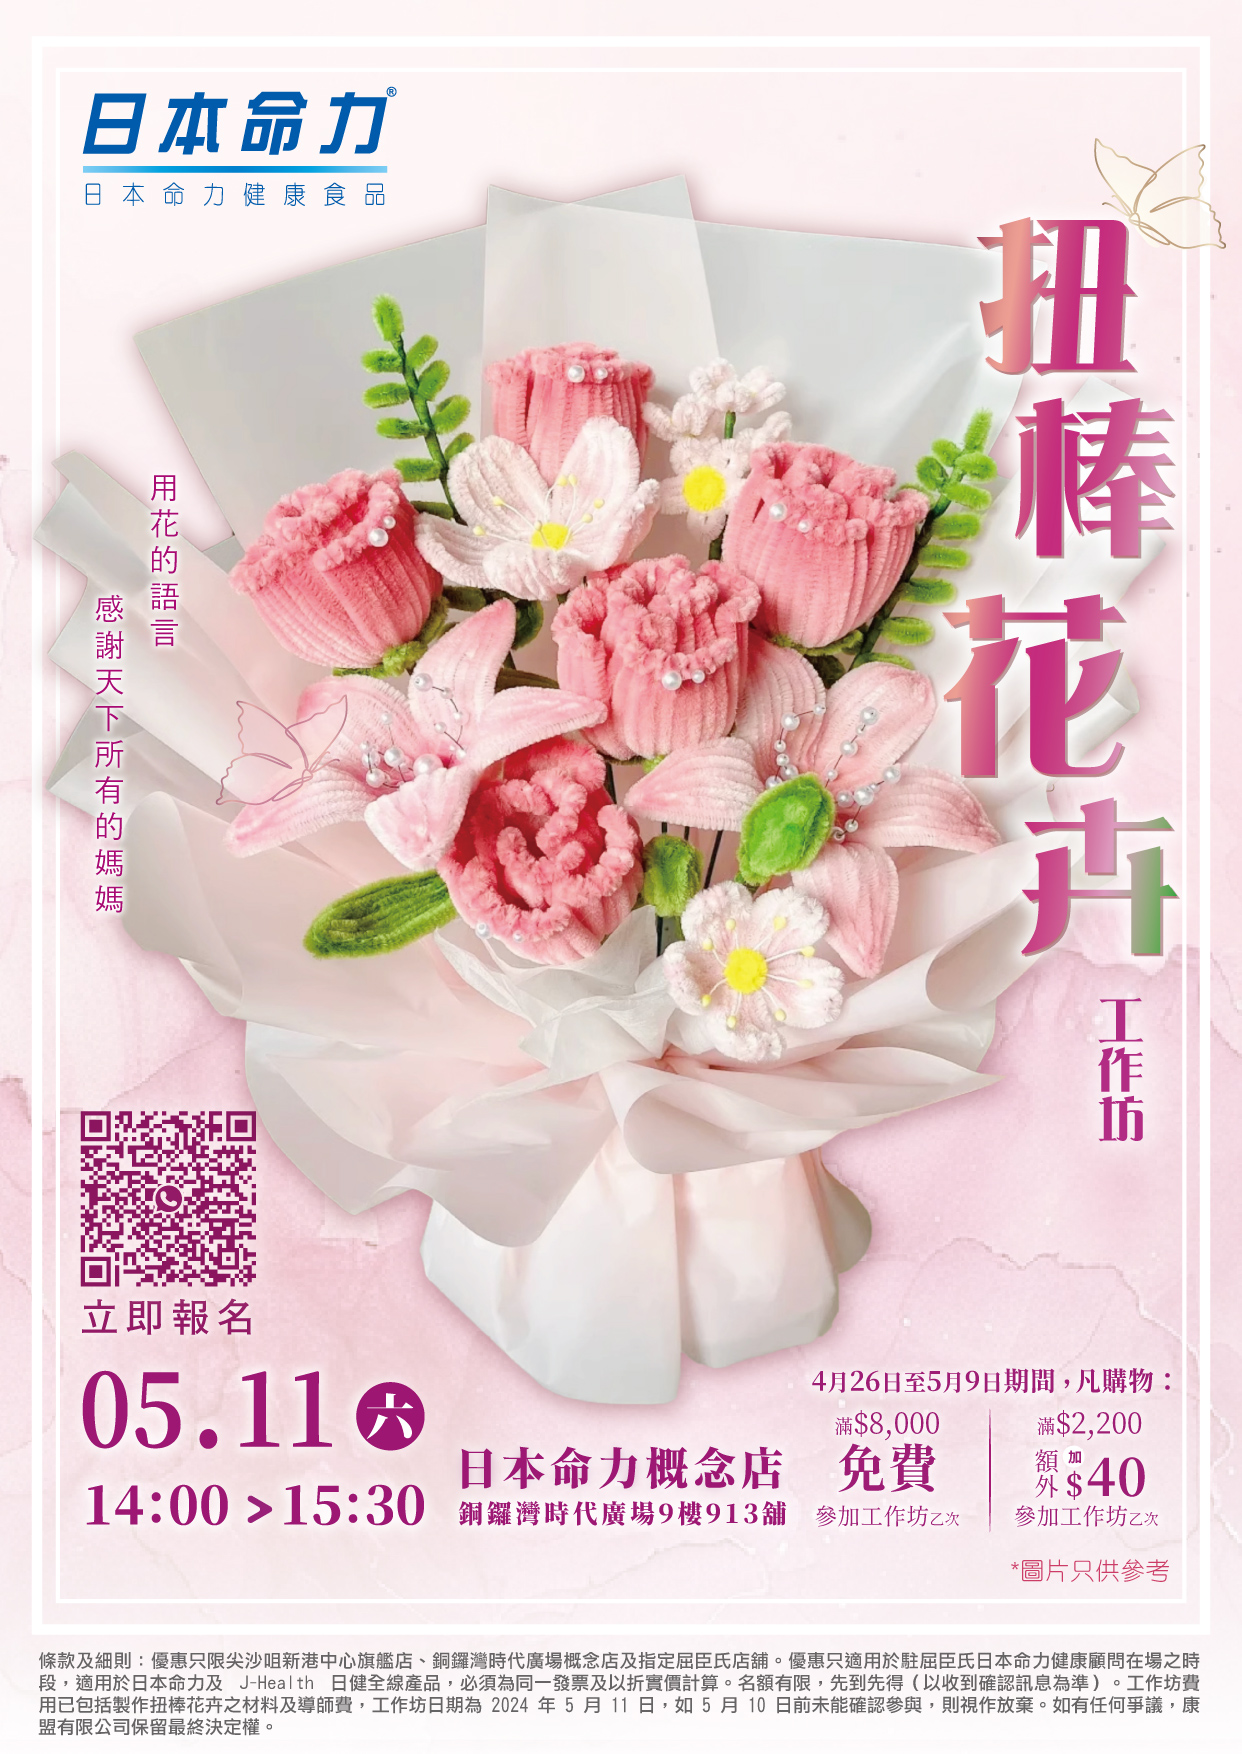 🌺扭棒花卉工作坊🌿 母親節特別企劃，用手工花卉表達愛意💕！